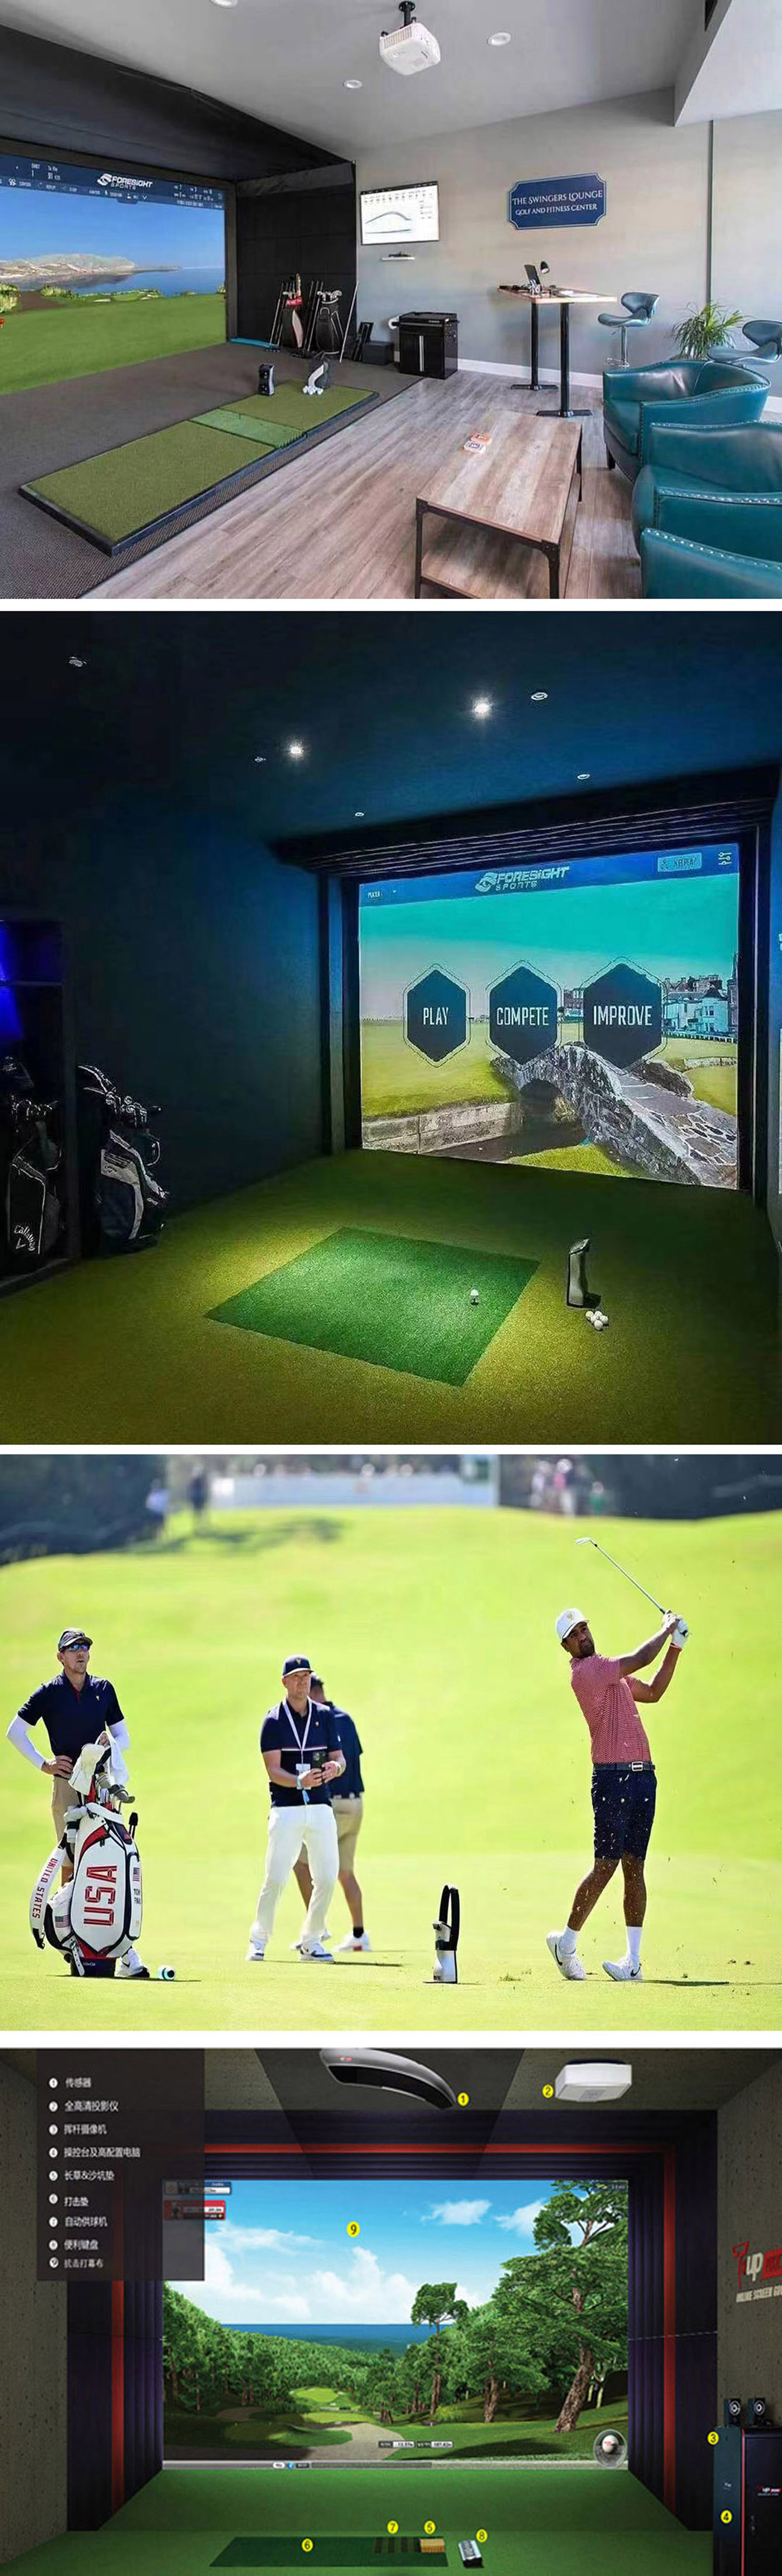 模拟高尔夫球场  三.jpg